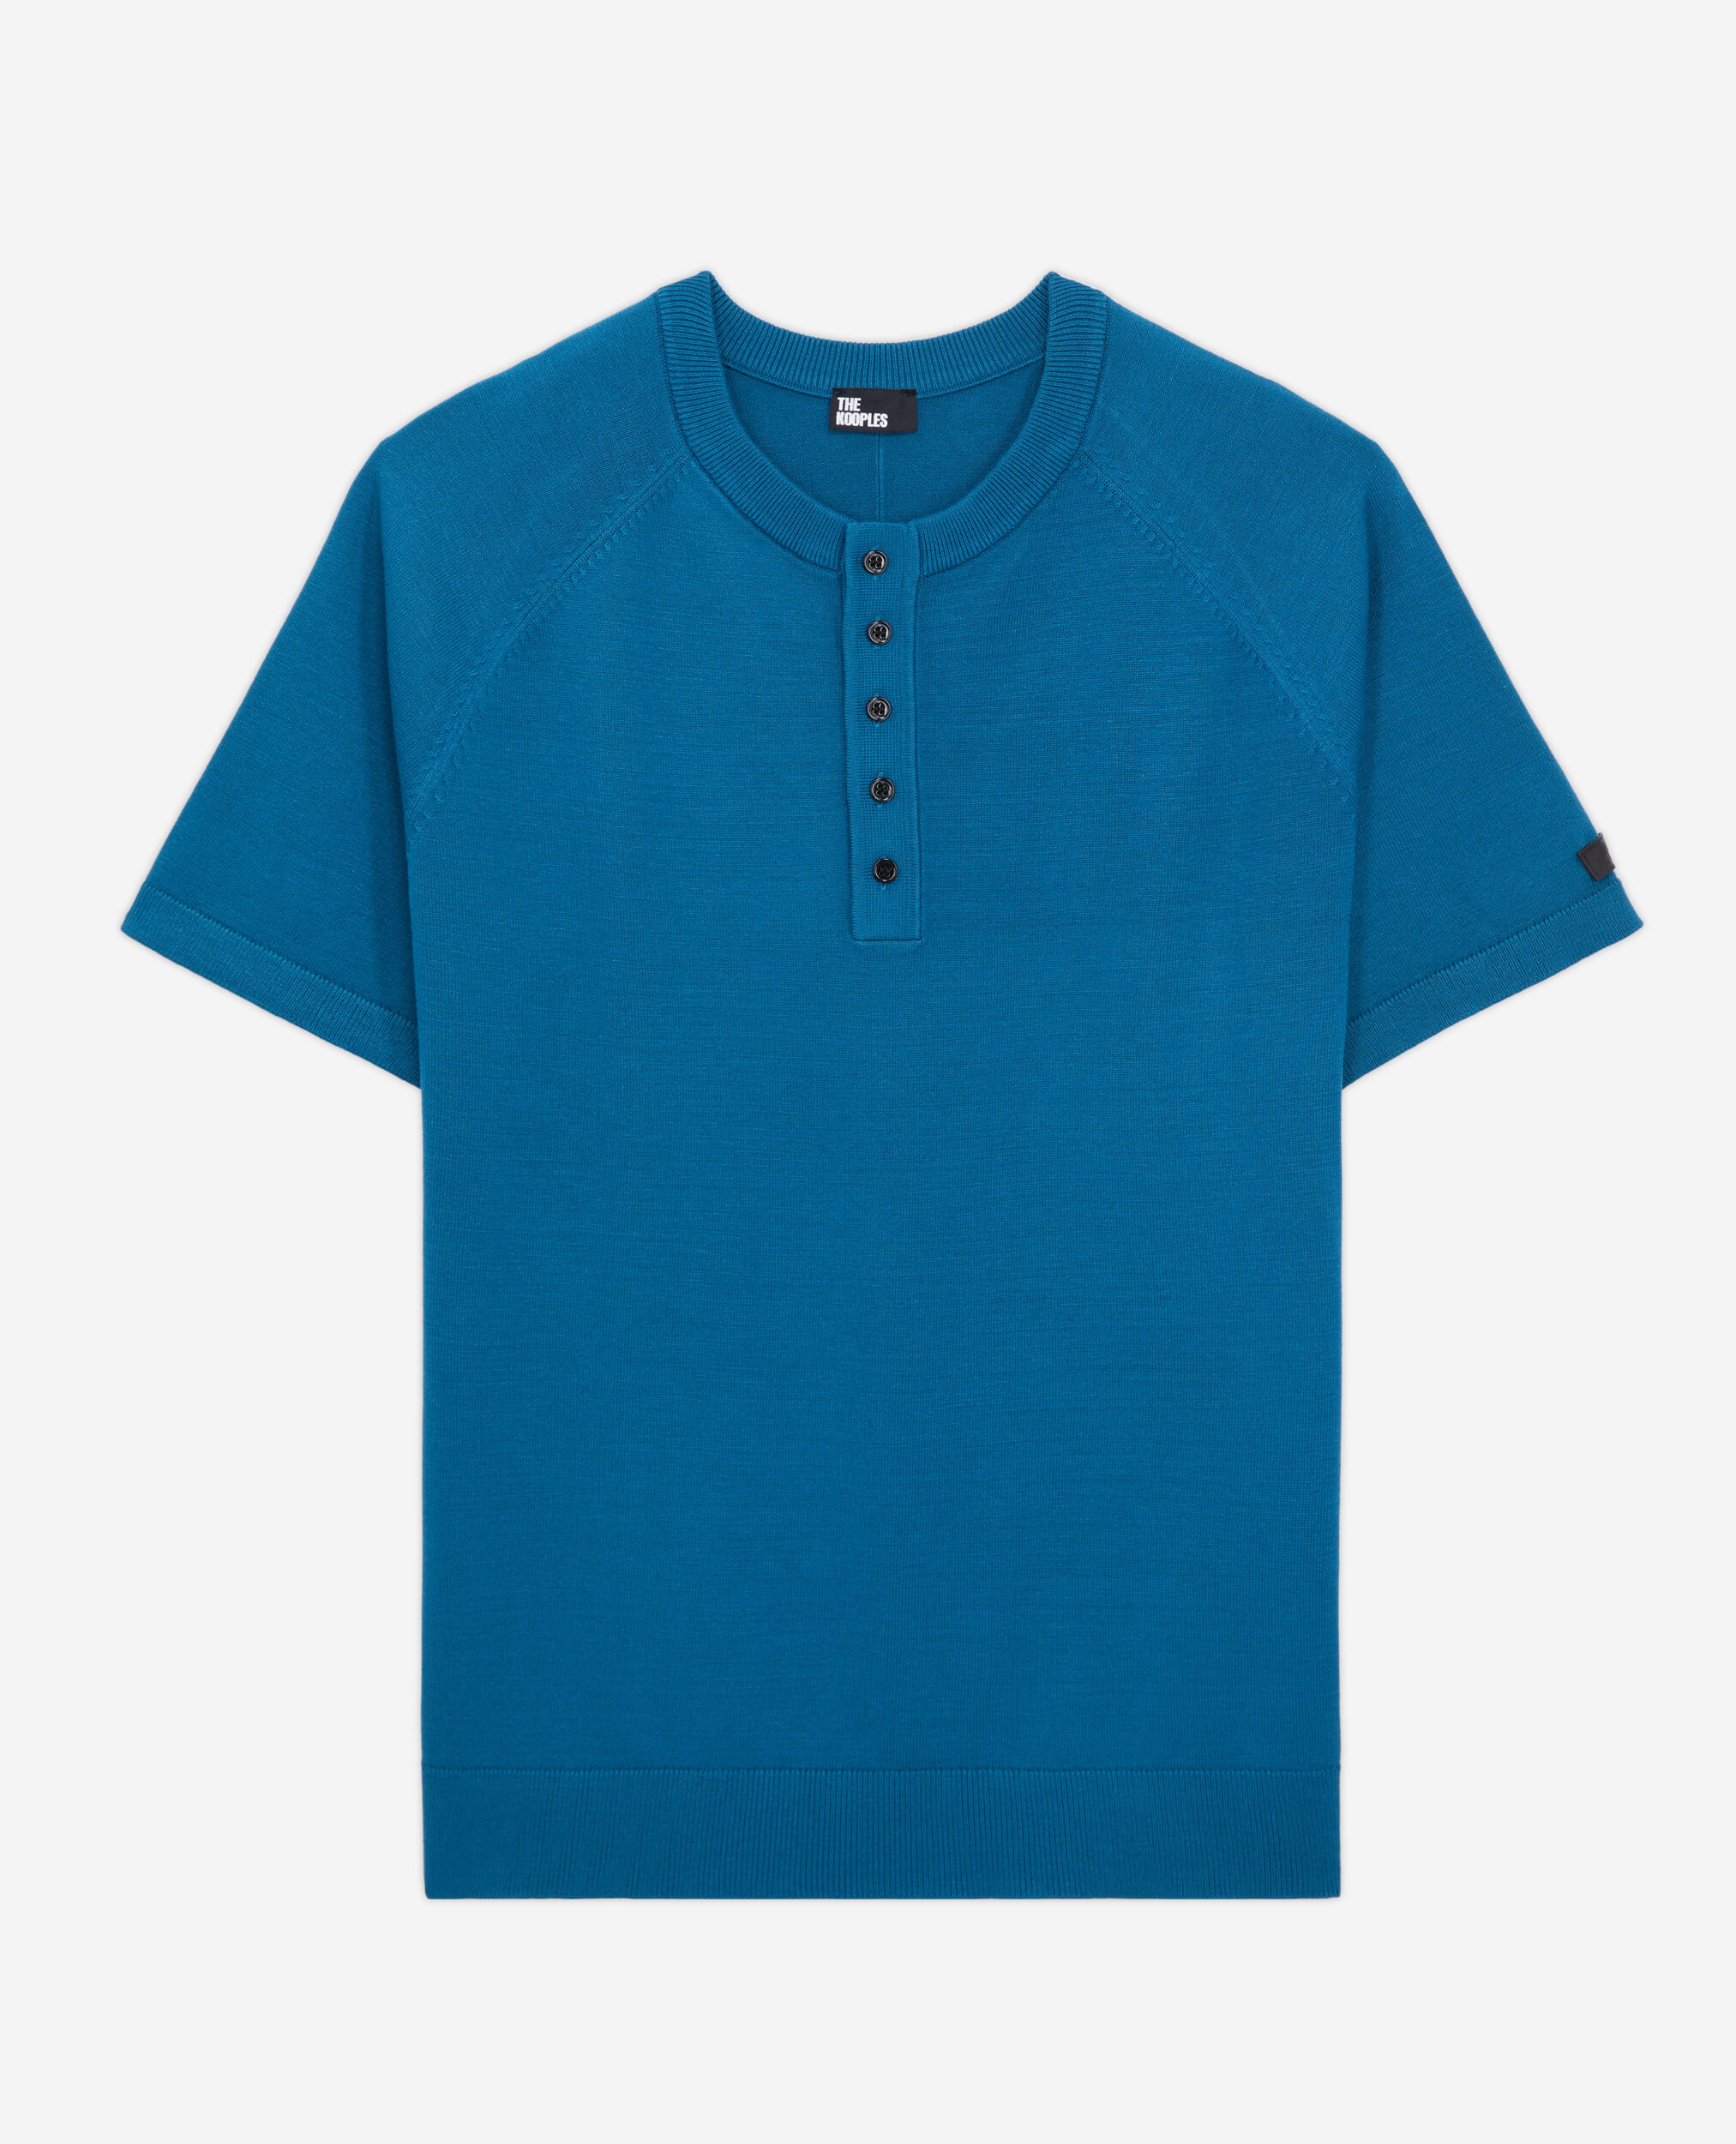 Blaues T-Shirt Herren aus Strick, MEDIUM BLUE, hi-res image number null